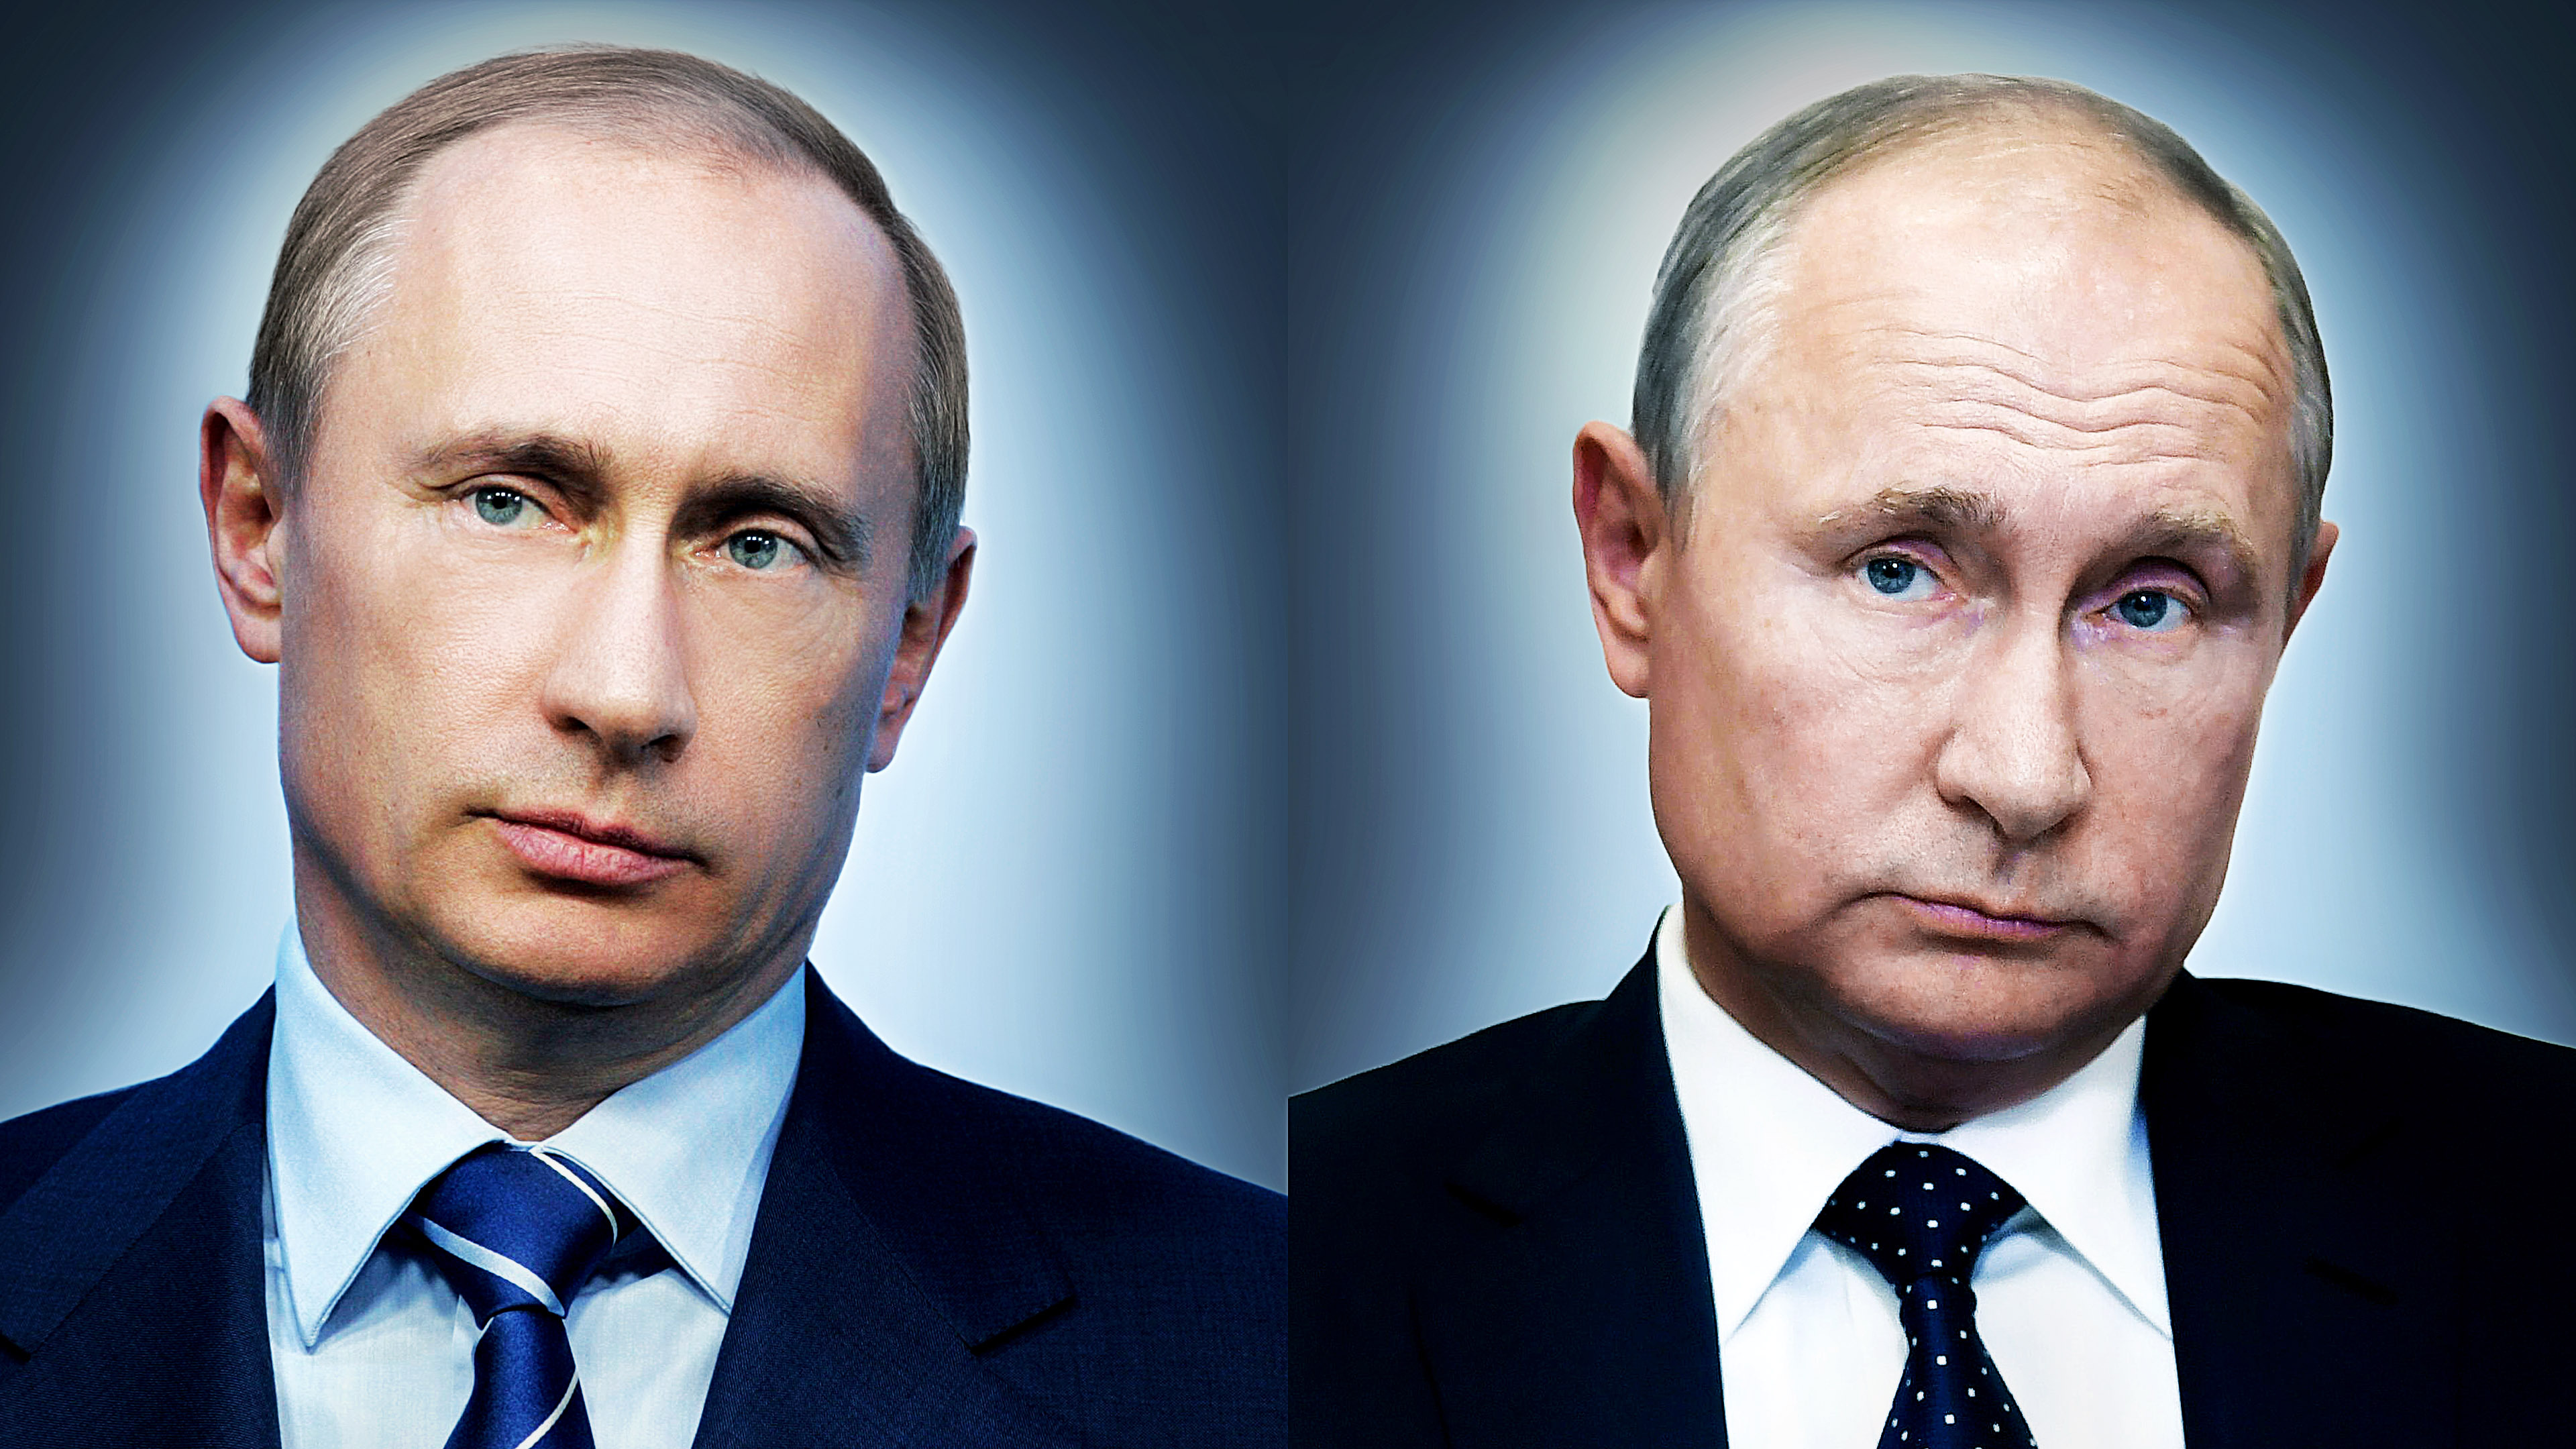 Путин фото 2000 и сейчас сравнение году